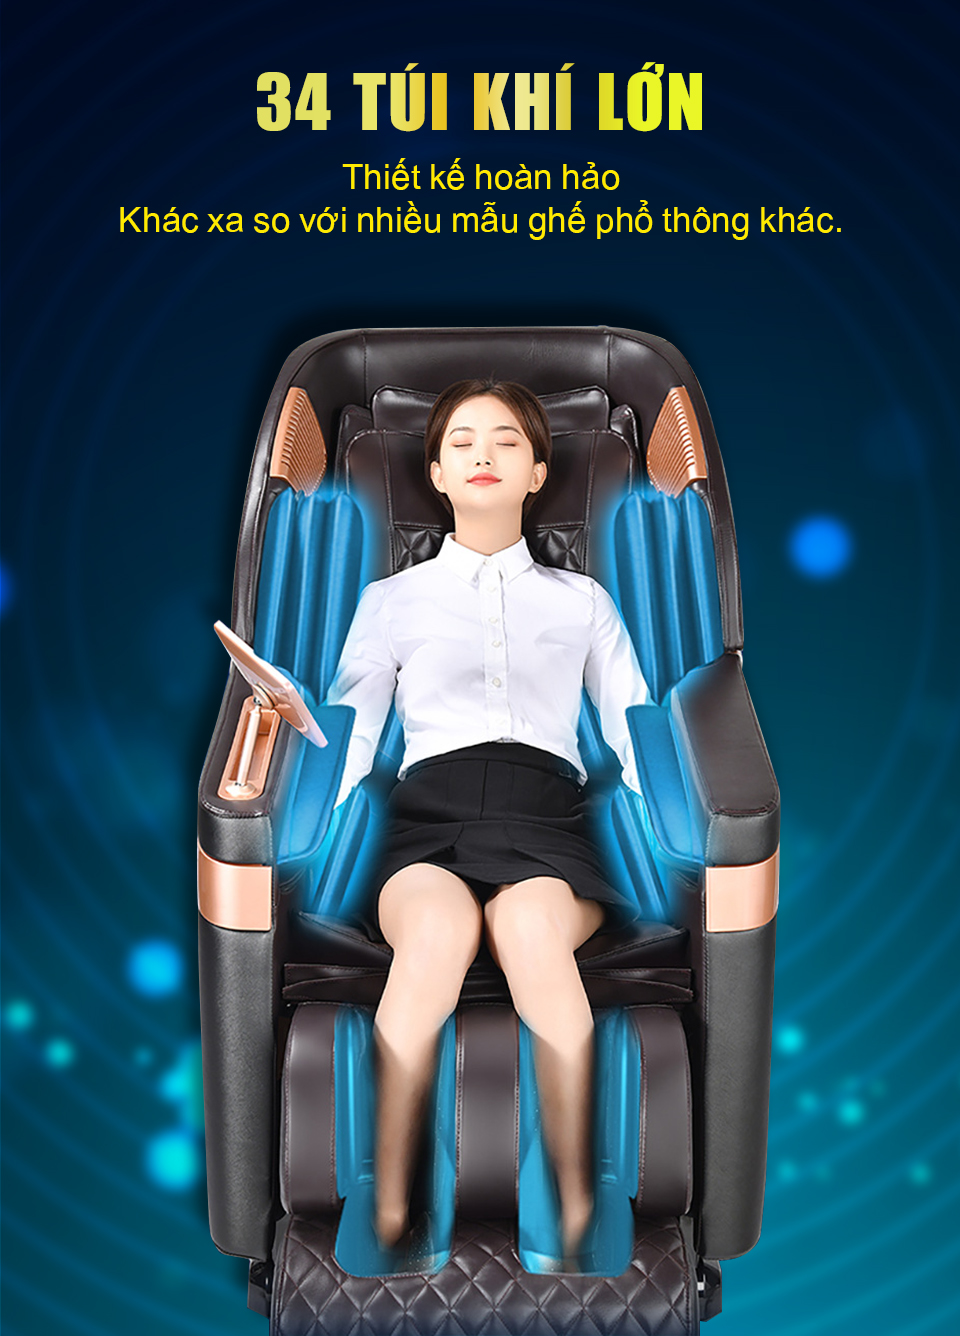 Công nghệ túi khí ghế massage được thiết kế để ôm trọn các vị trí trên cơ thể